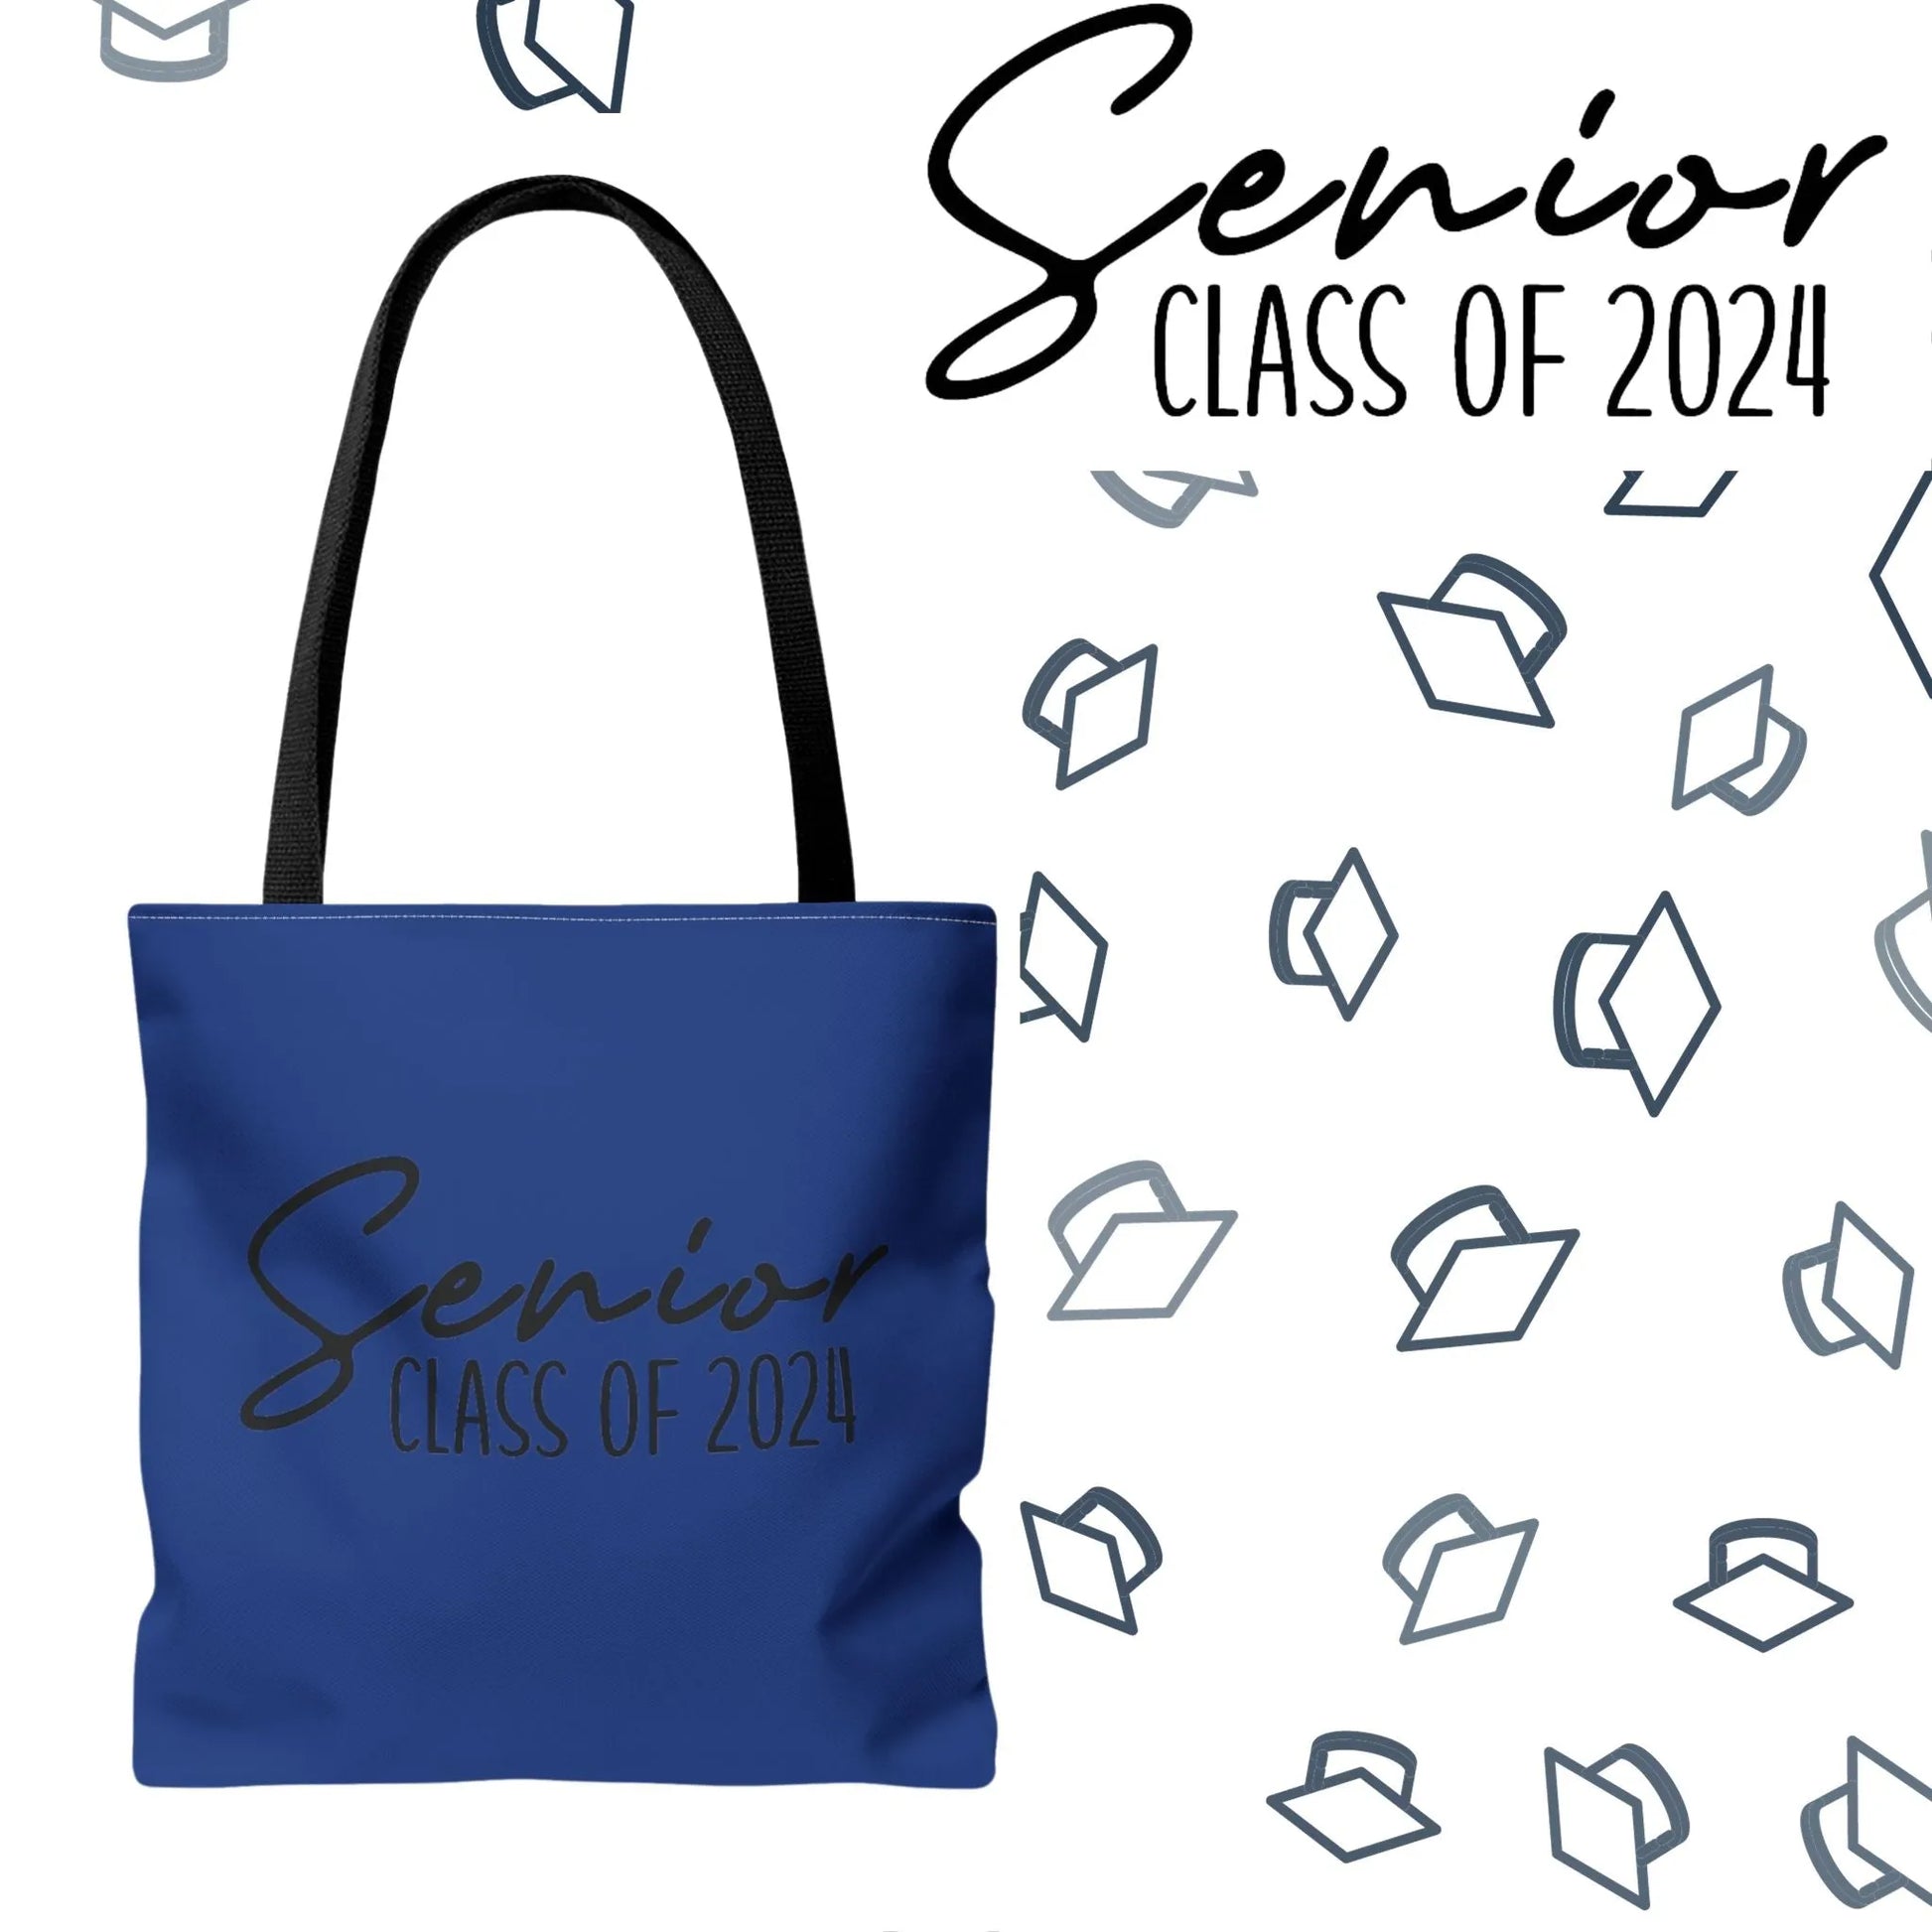 Senior Class of 2024 Tote Bag - Class of 2024 Tote Bag - Senior 2024 Tote Bag